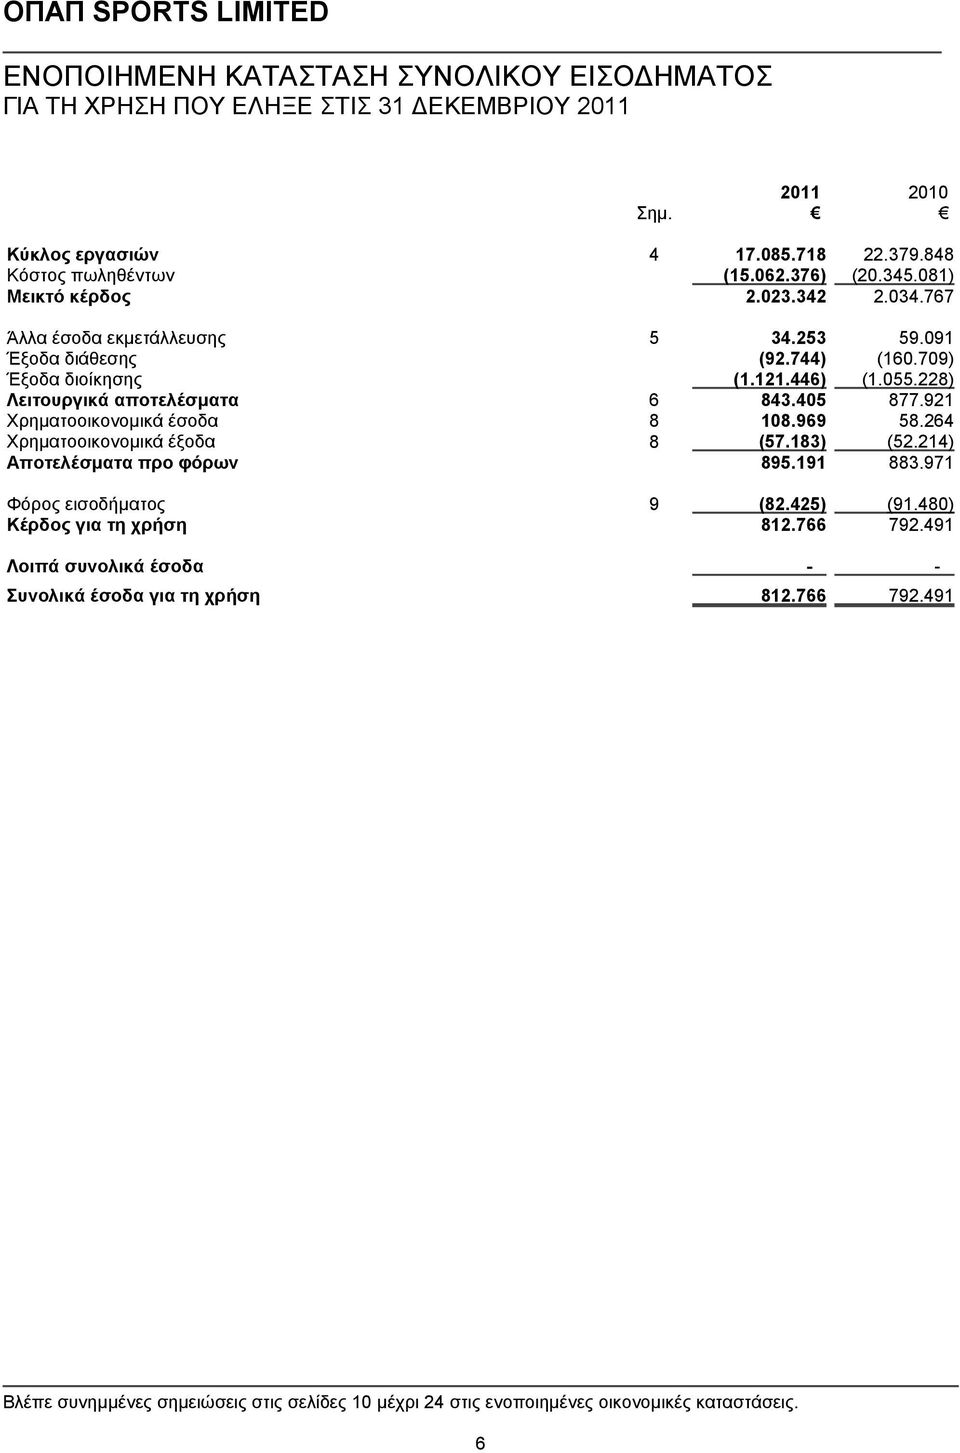 921 Χρηματοοικονομικά έσοδα 8 108.969 58.264 Χρηματοοικονομικά έξοδα 8 (57.183) (52.214) Αποτελέσματα προ φόρων 895.191 883.971 Φόρος εισοδήματος 9 (82.425) (91.